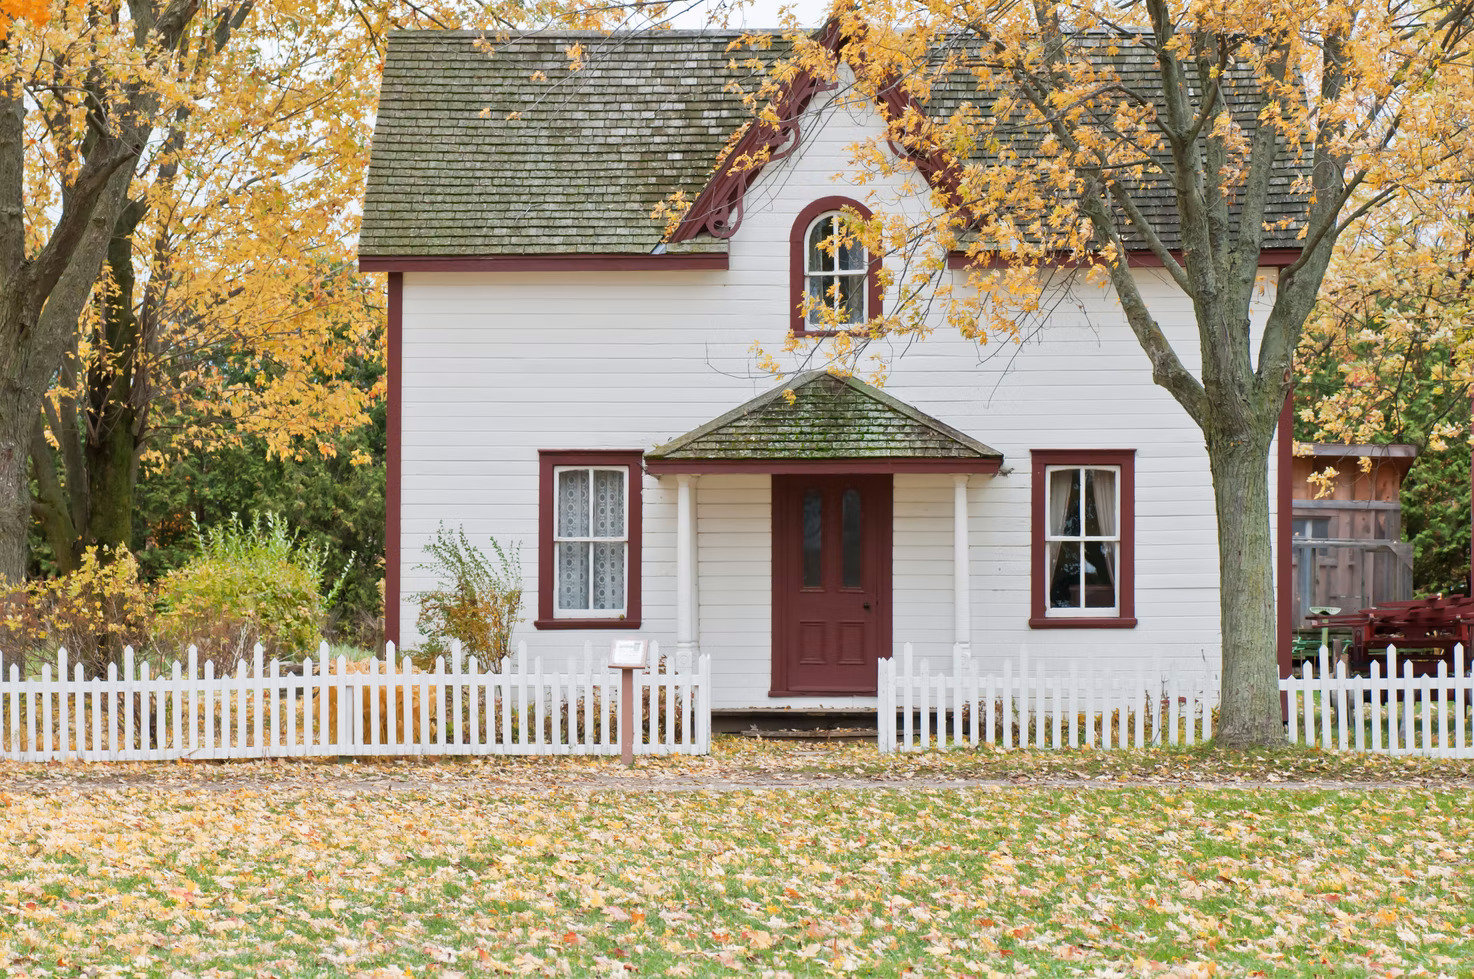 quaint house surrounding by fallen leaves